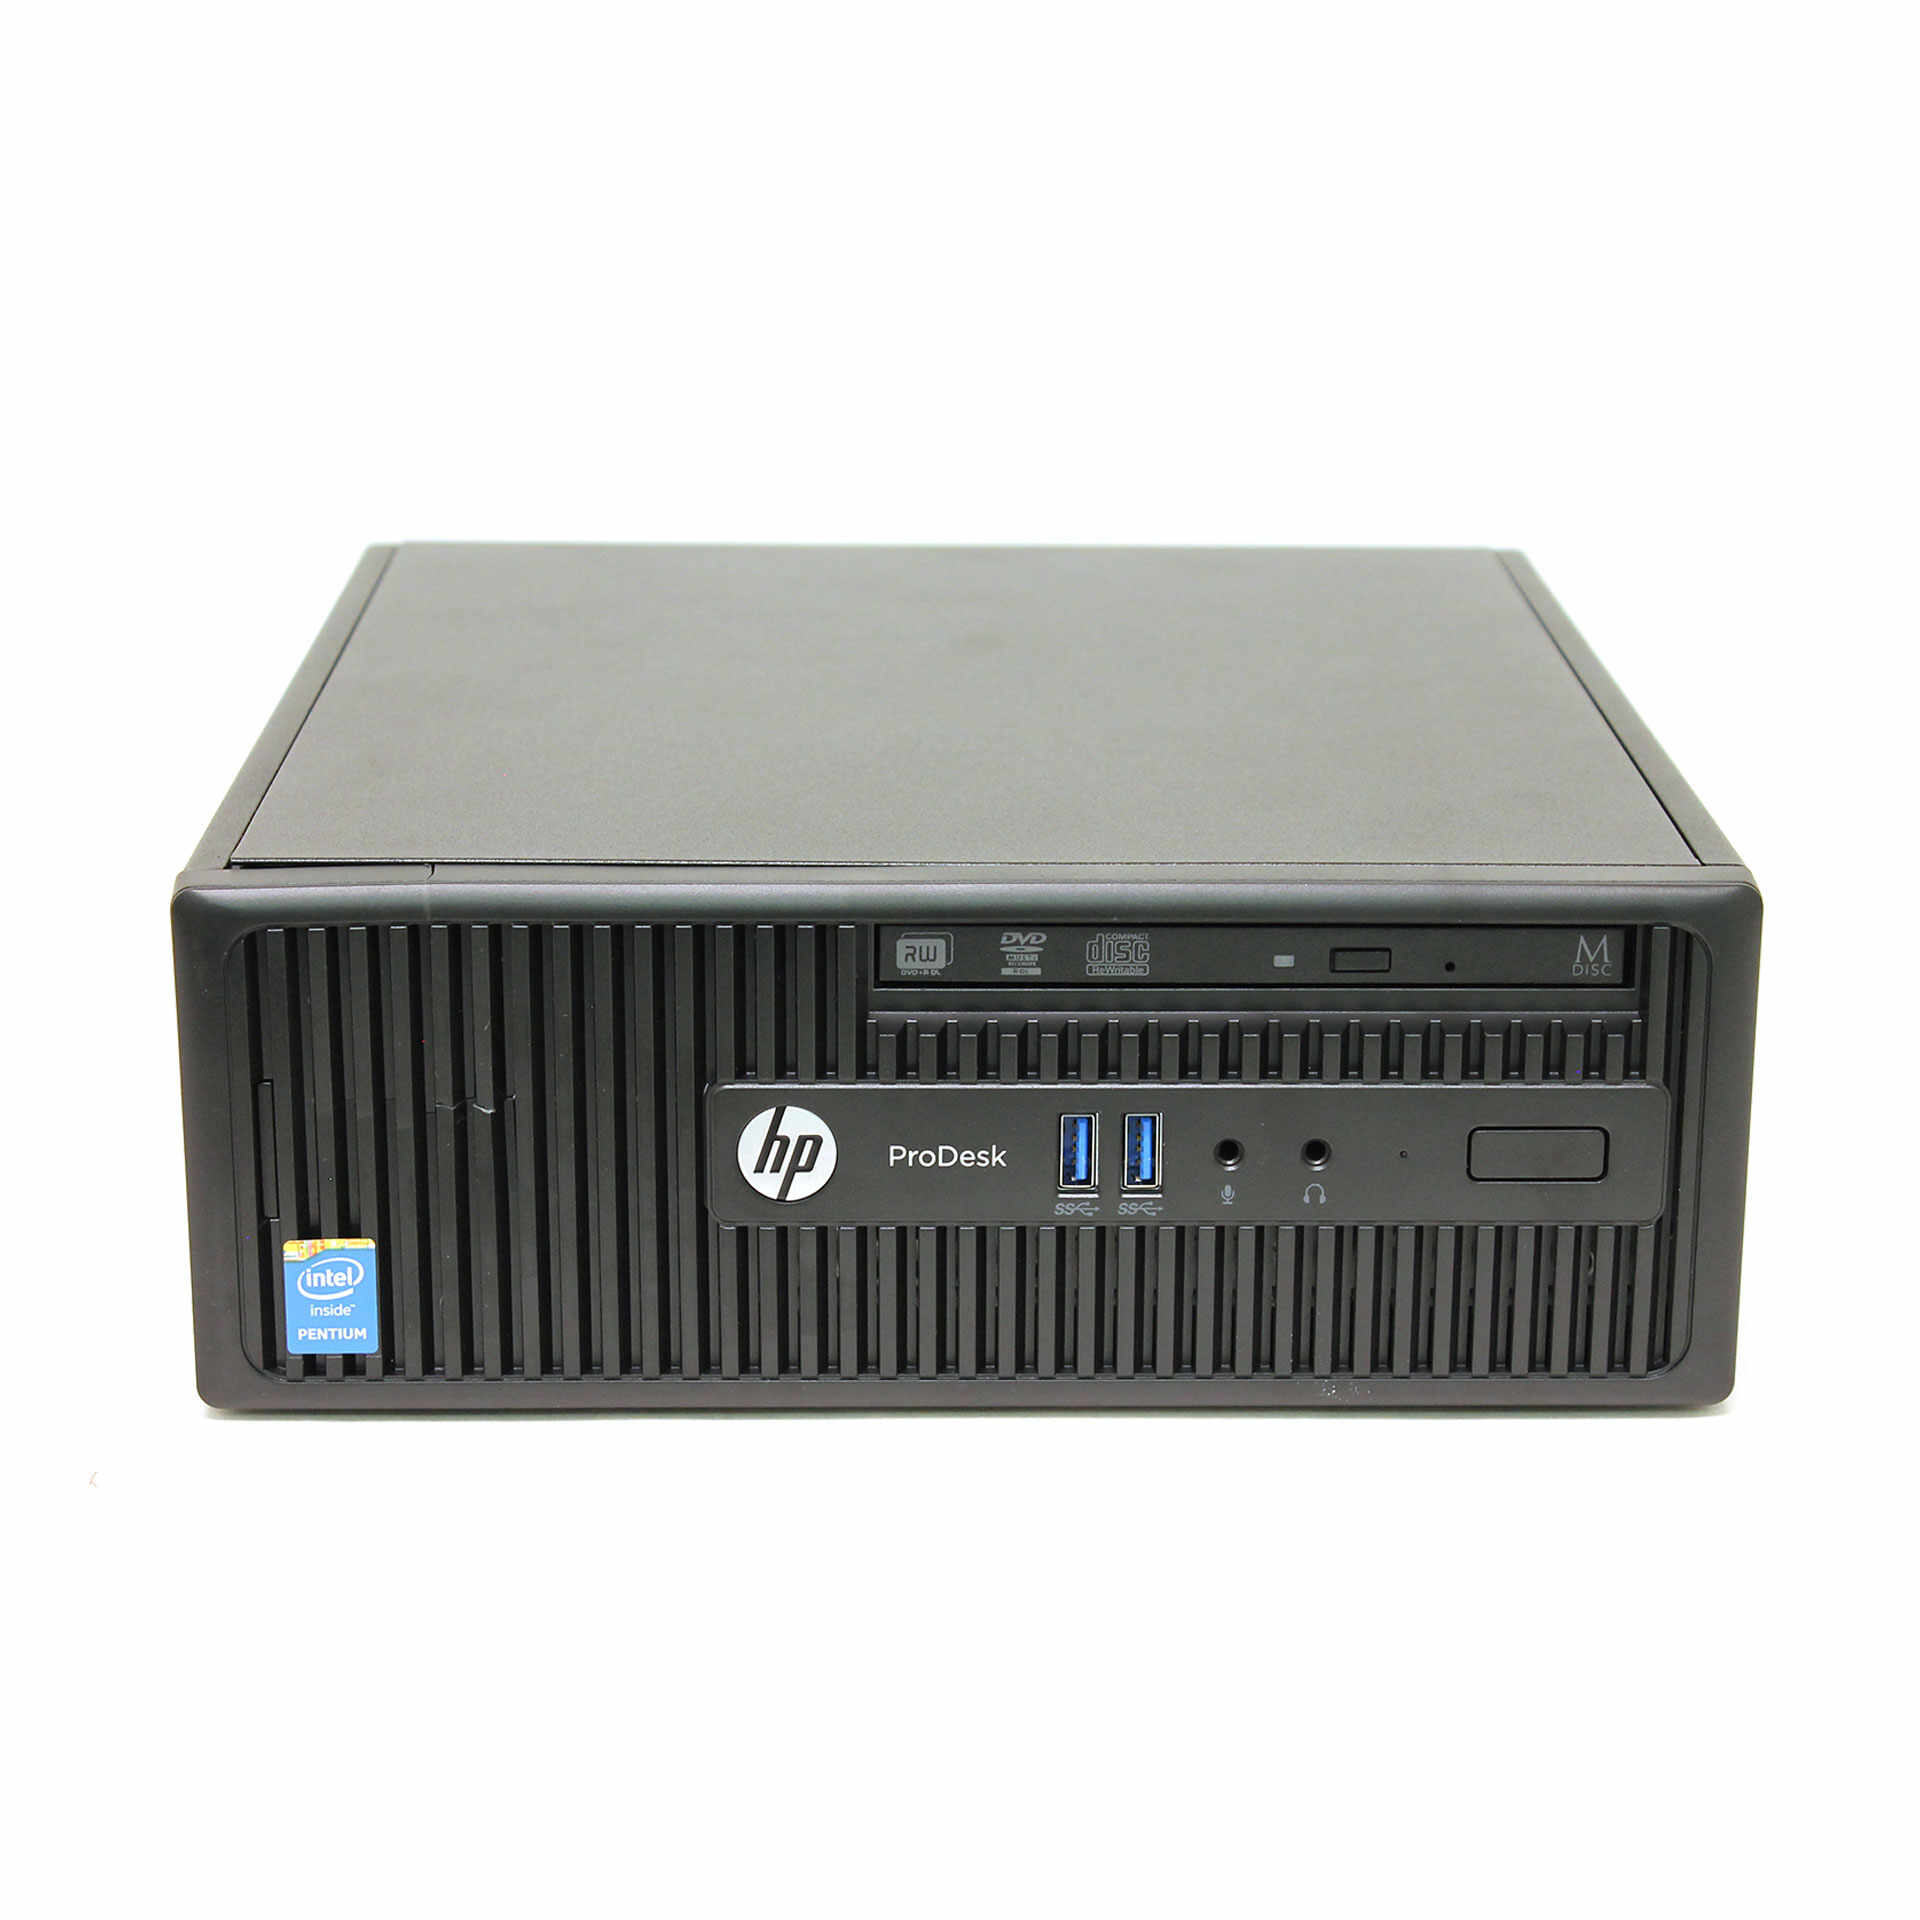 Calculator HP 400 G2.5 SFF, Intel Celeron G1850 2.90GHz, 4GB DDR3, 500GB SATA, DVD-RW